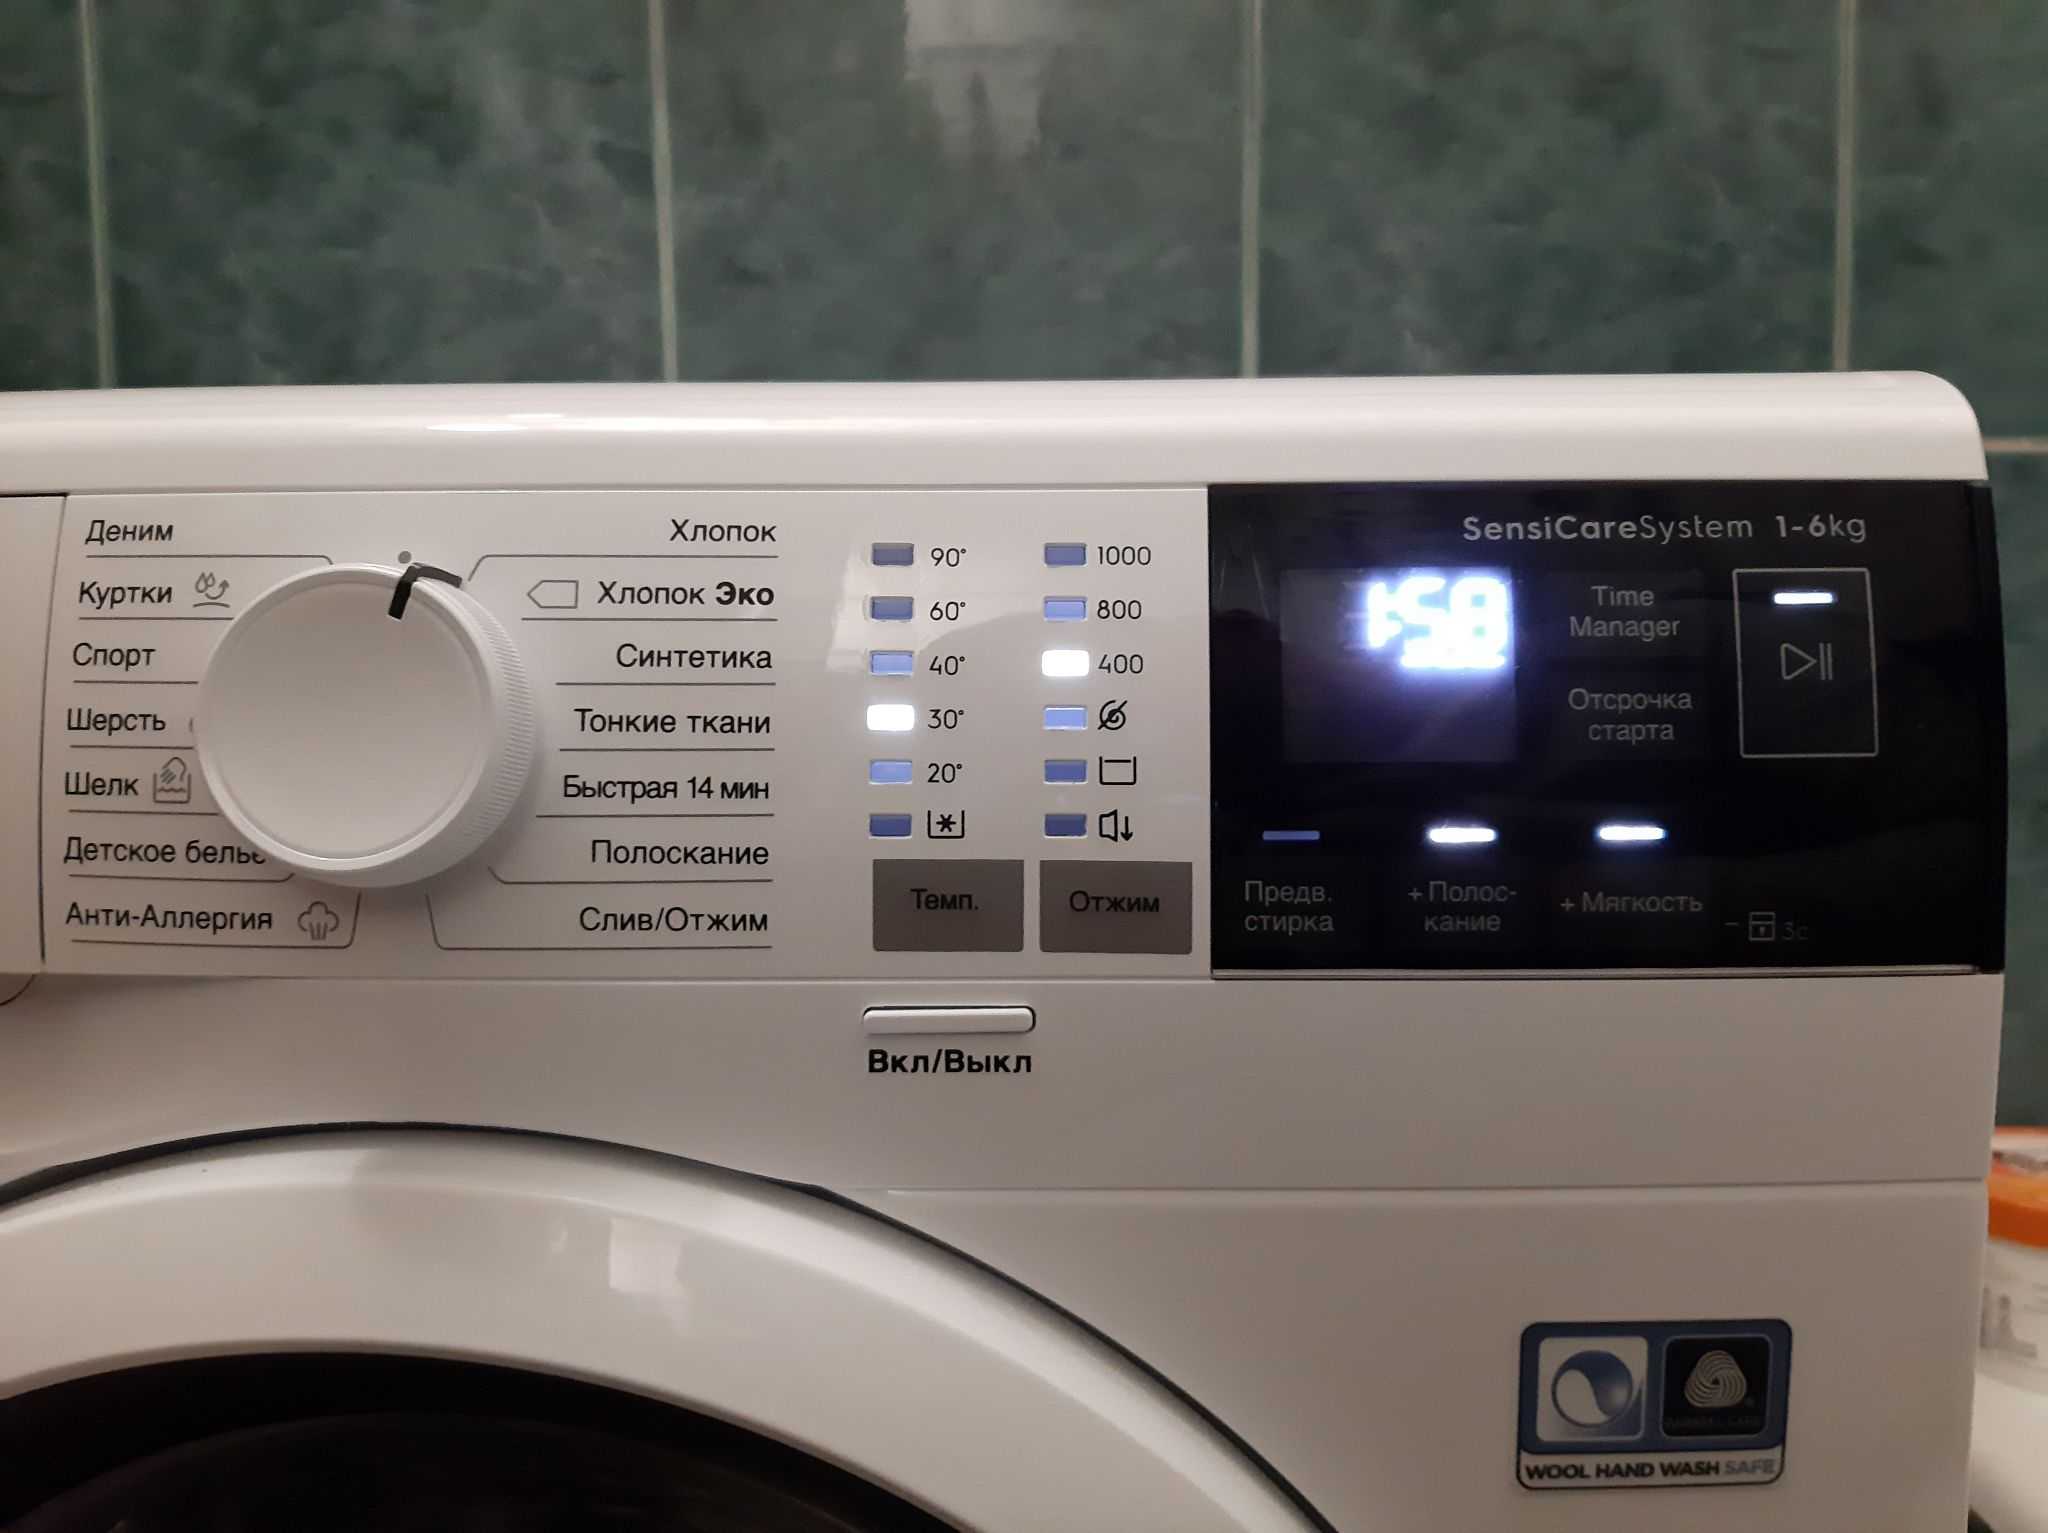 Настенная стиральная машина: топ – 5 лучших моделей